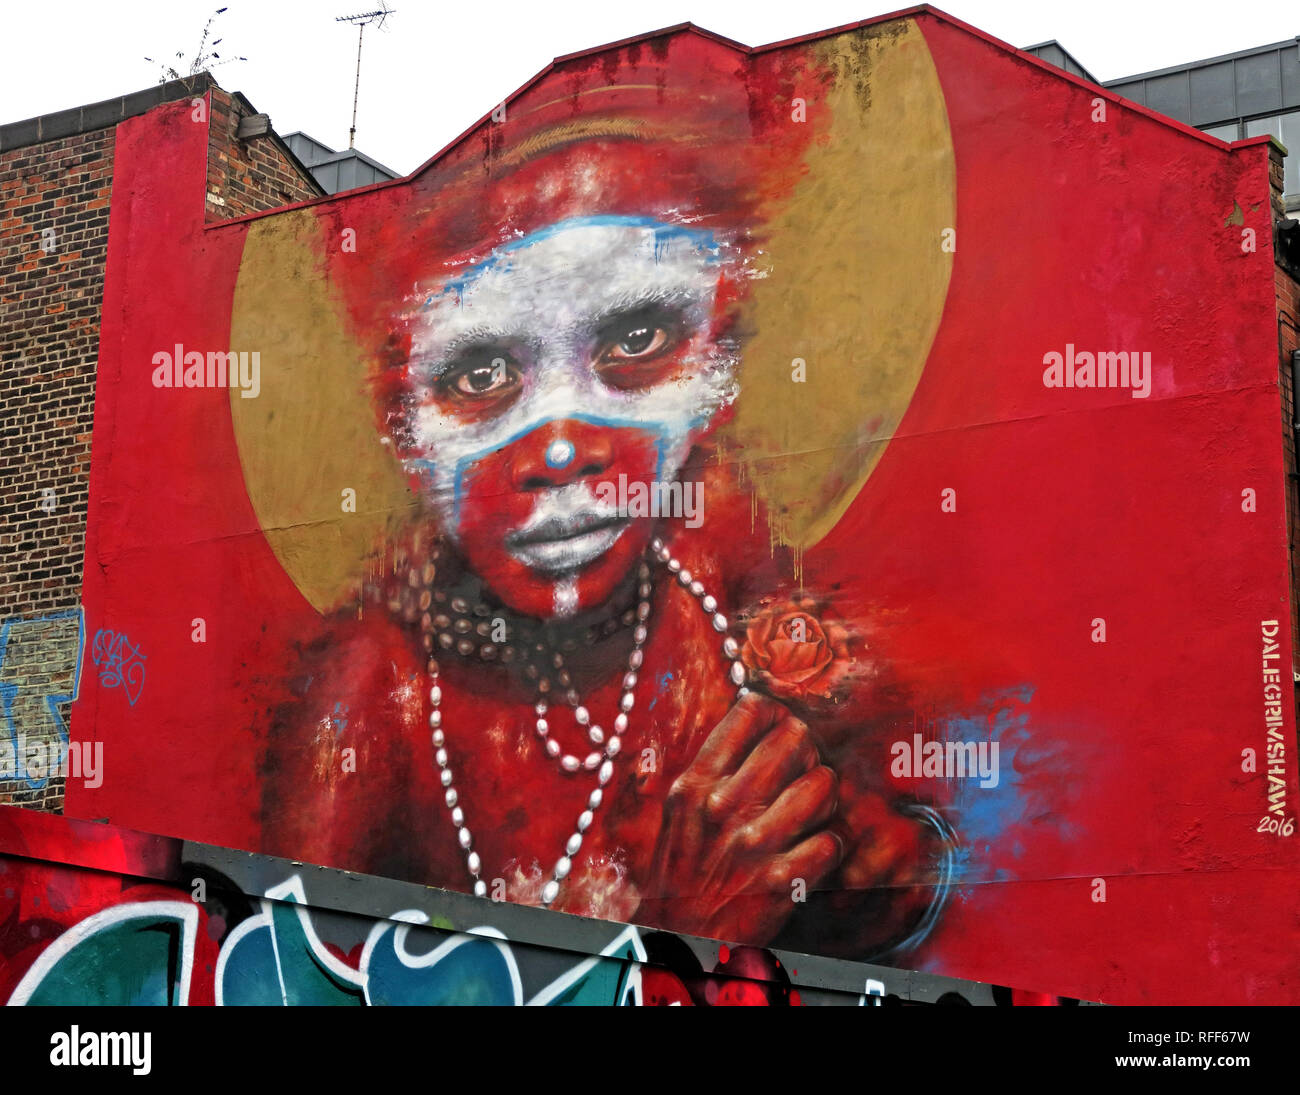 Face autochtones sur fond rouge de graffiti, Spear, quart nord St, Manchester, Angleterre, RU Banque D'Images